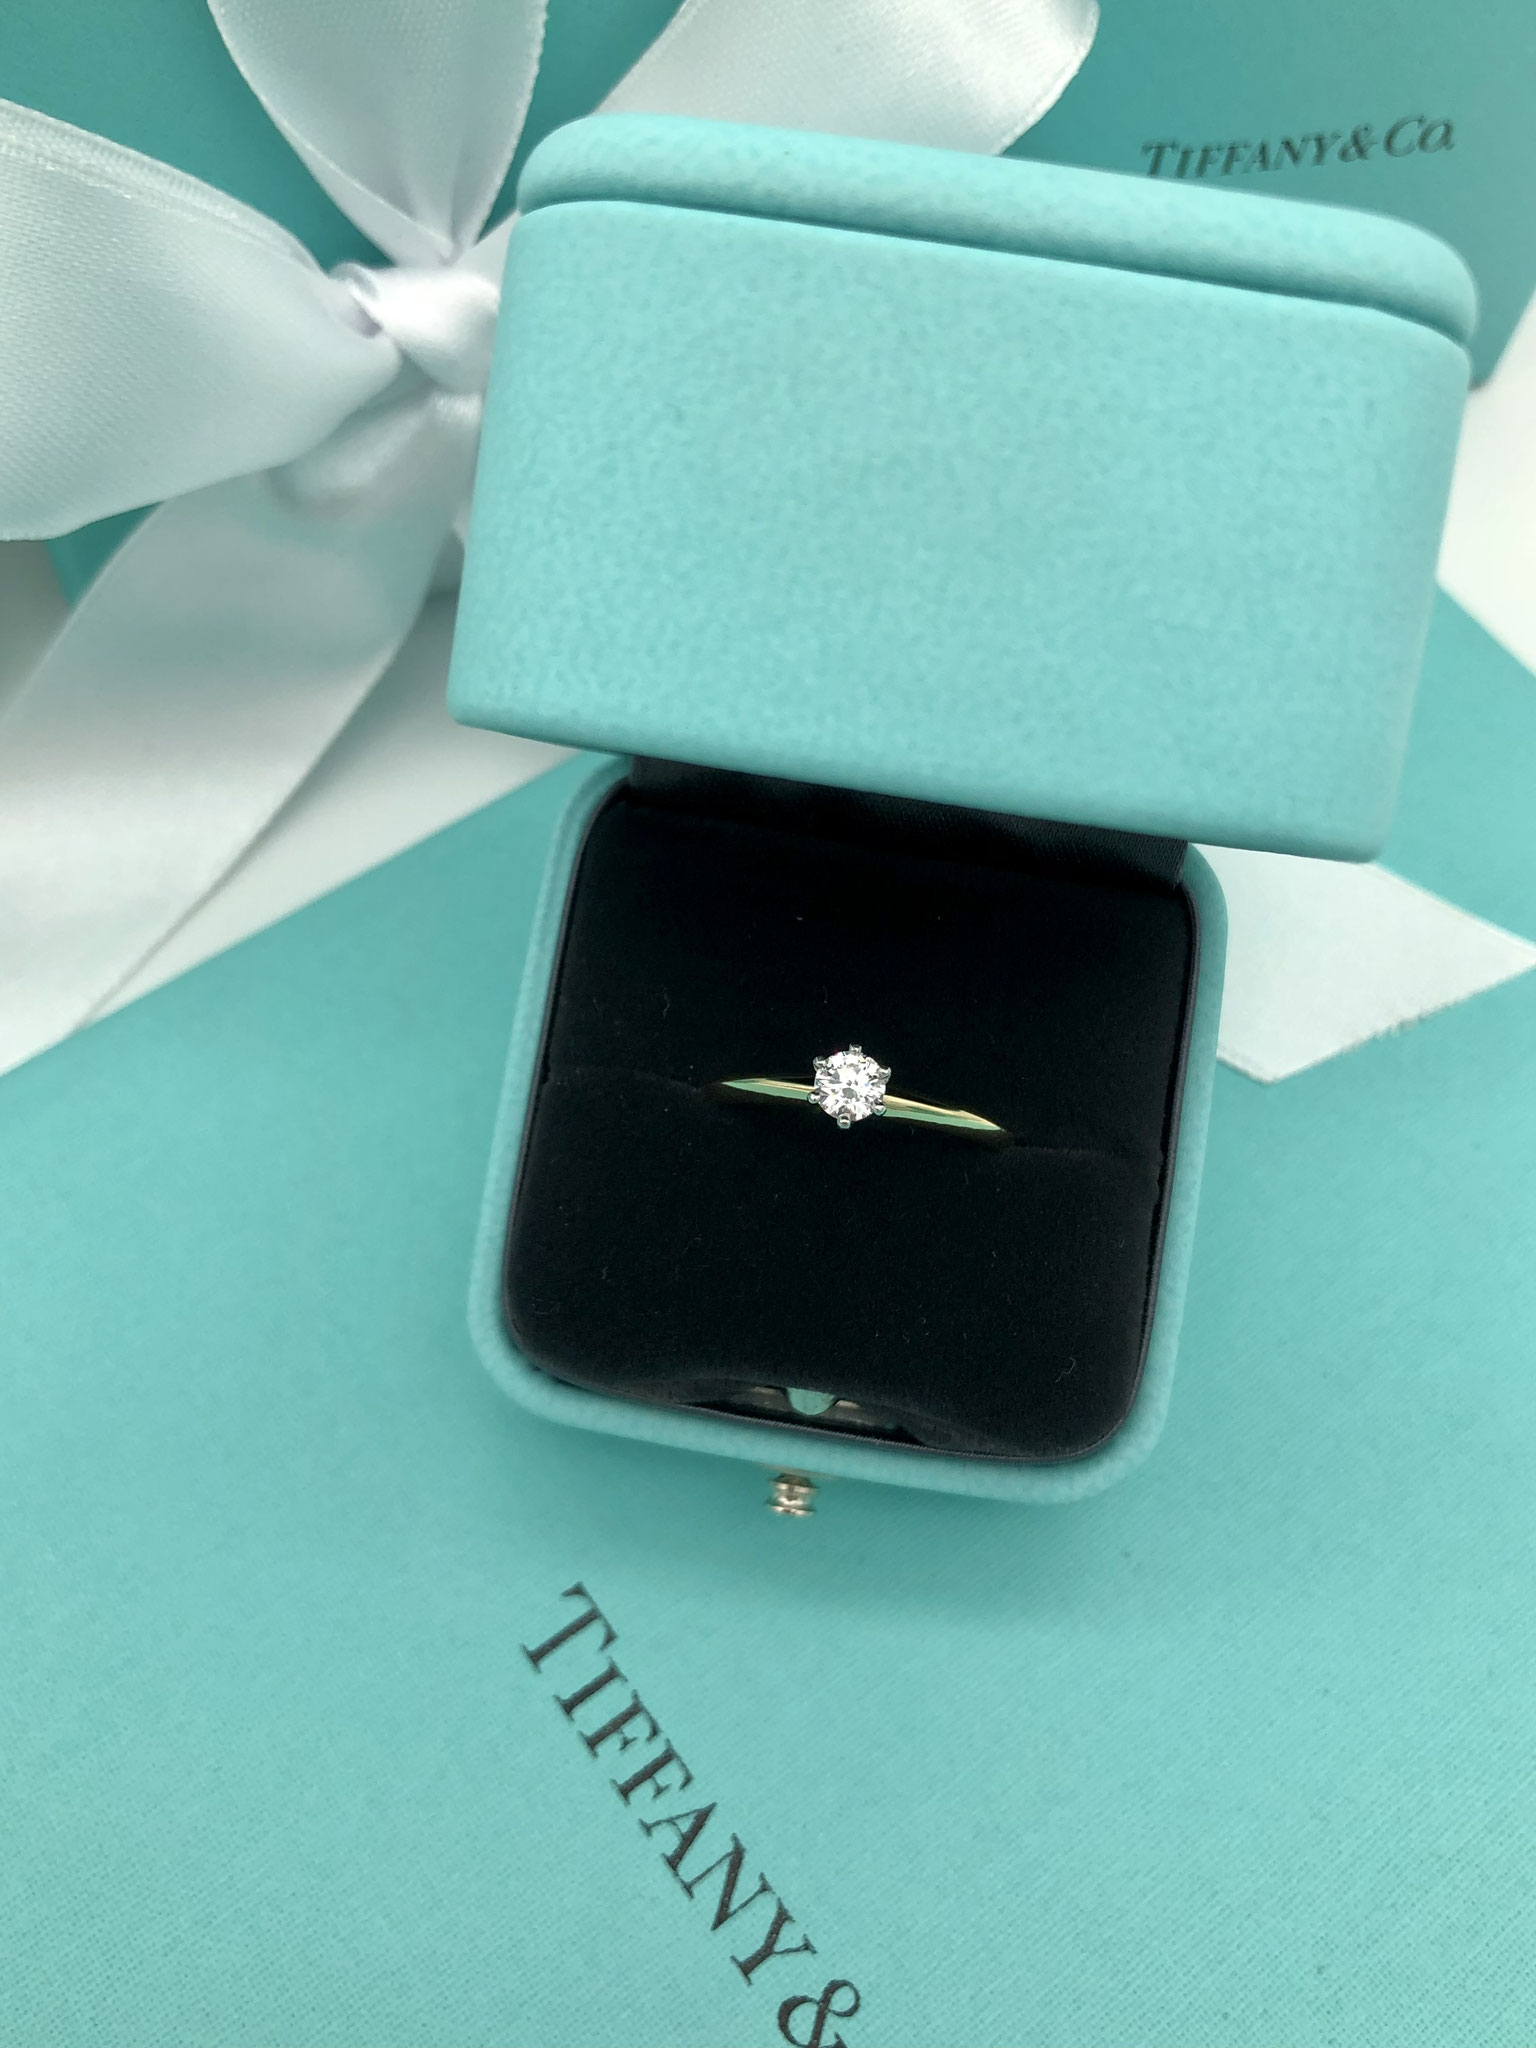 Tiffany&Co. Setting Gold / Jubel Ring